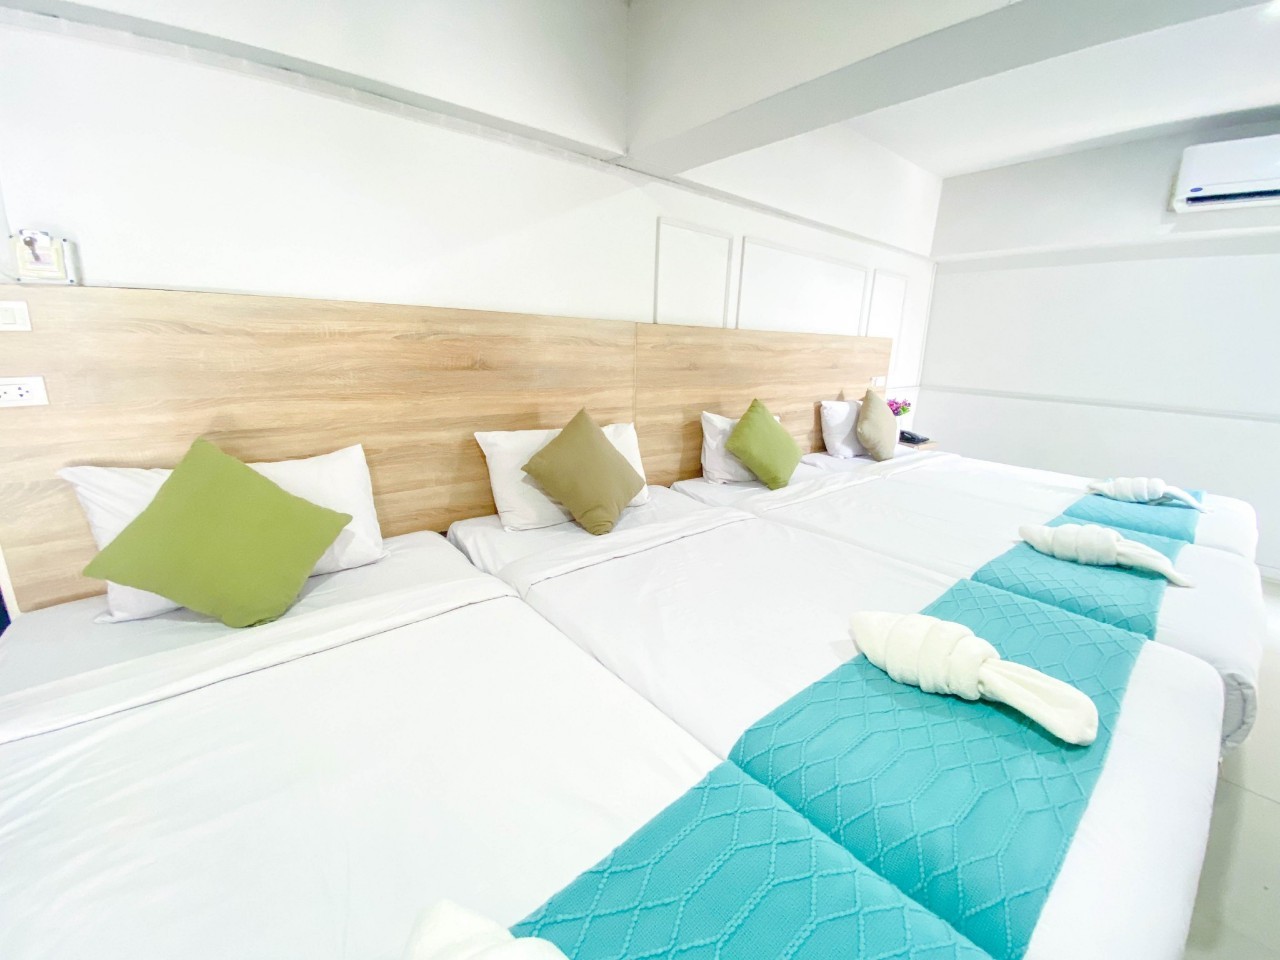 รีวิว48 วิลล์ ดอนเมือง แอร์พอร์ต - โปรโมชั่นโรงแรม 3 ดาวในกรุงเทพฯ |  Trip.com